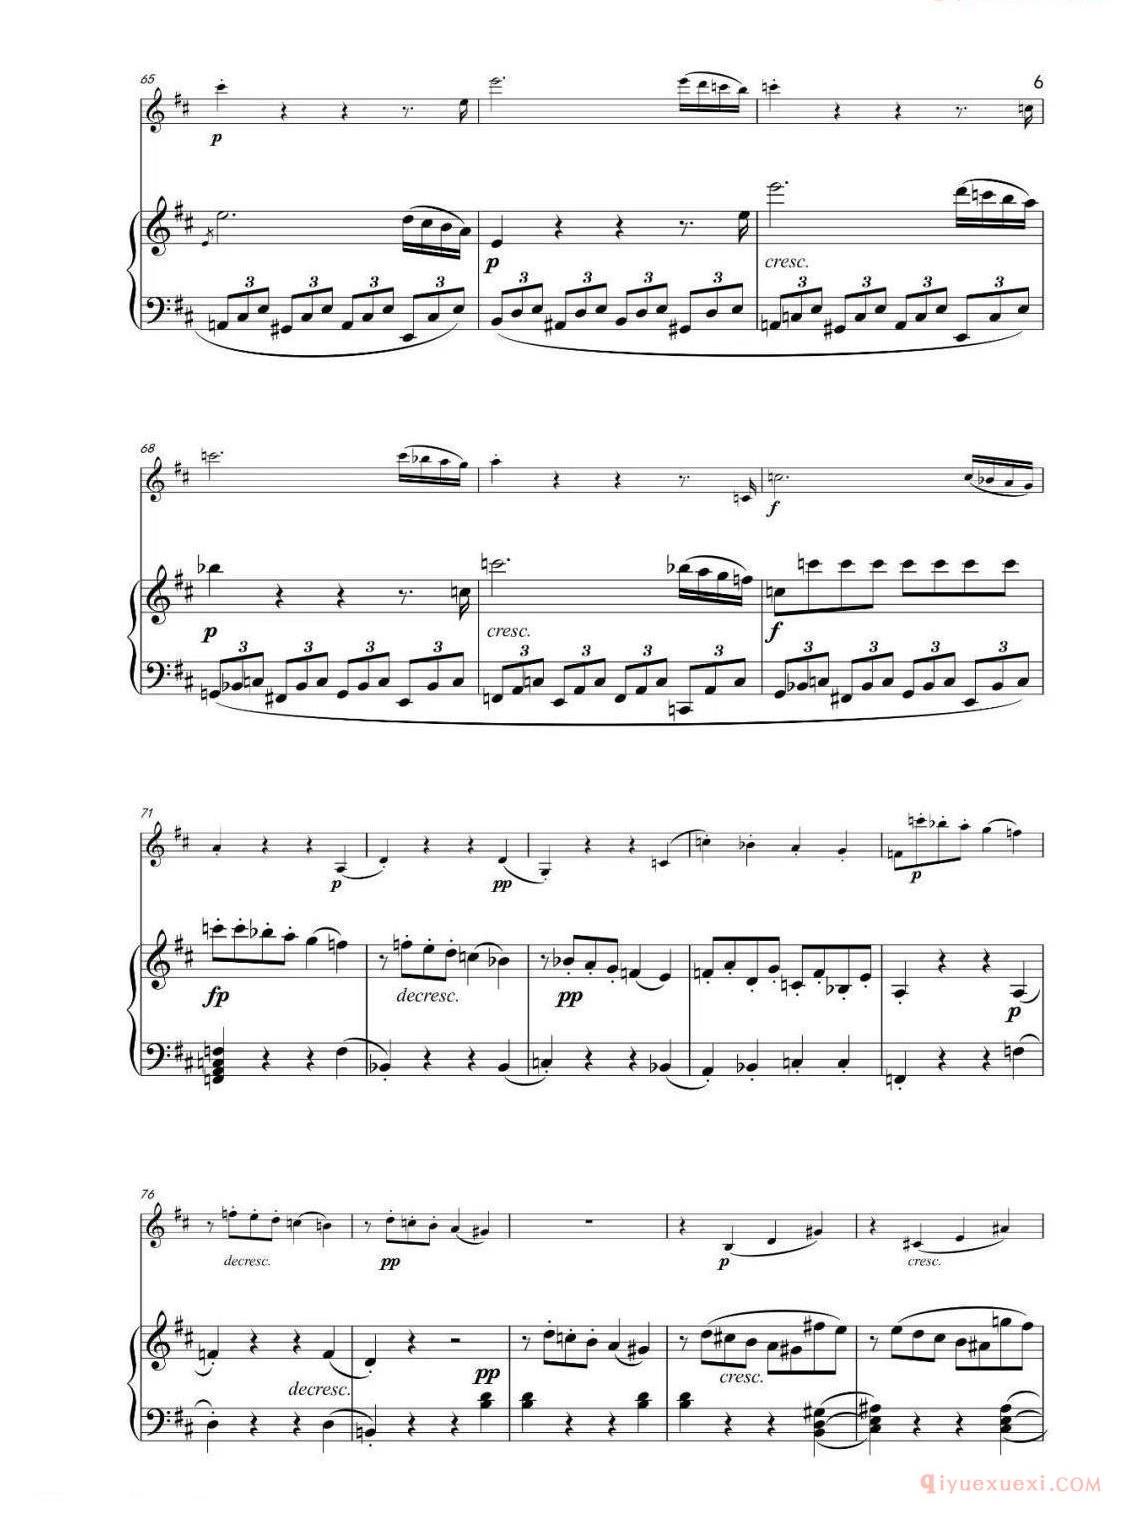 D大调小提琴奏鸣曲op. 12 No. 1第一乐章 小提琴钢琴合奏谱